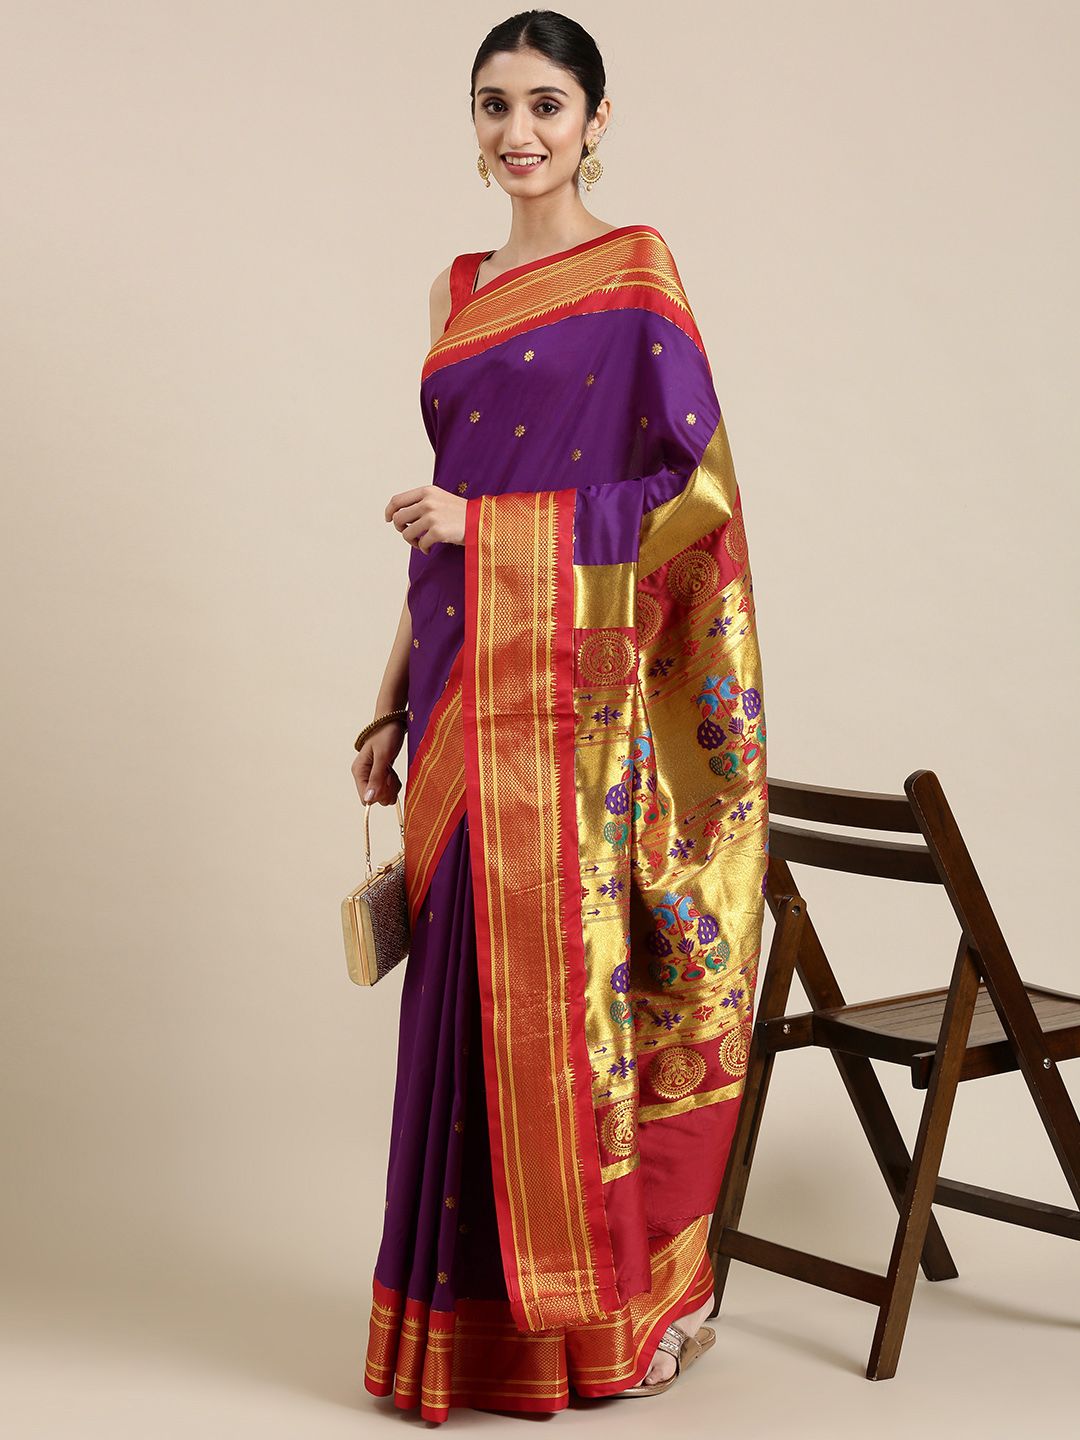 Varkala Silk Sarees Aubergine & Red Ethnic Motifs Zari Art Silk Paithani Saree Price in India